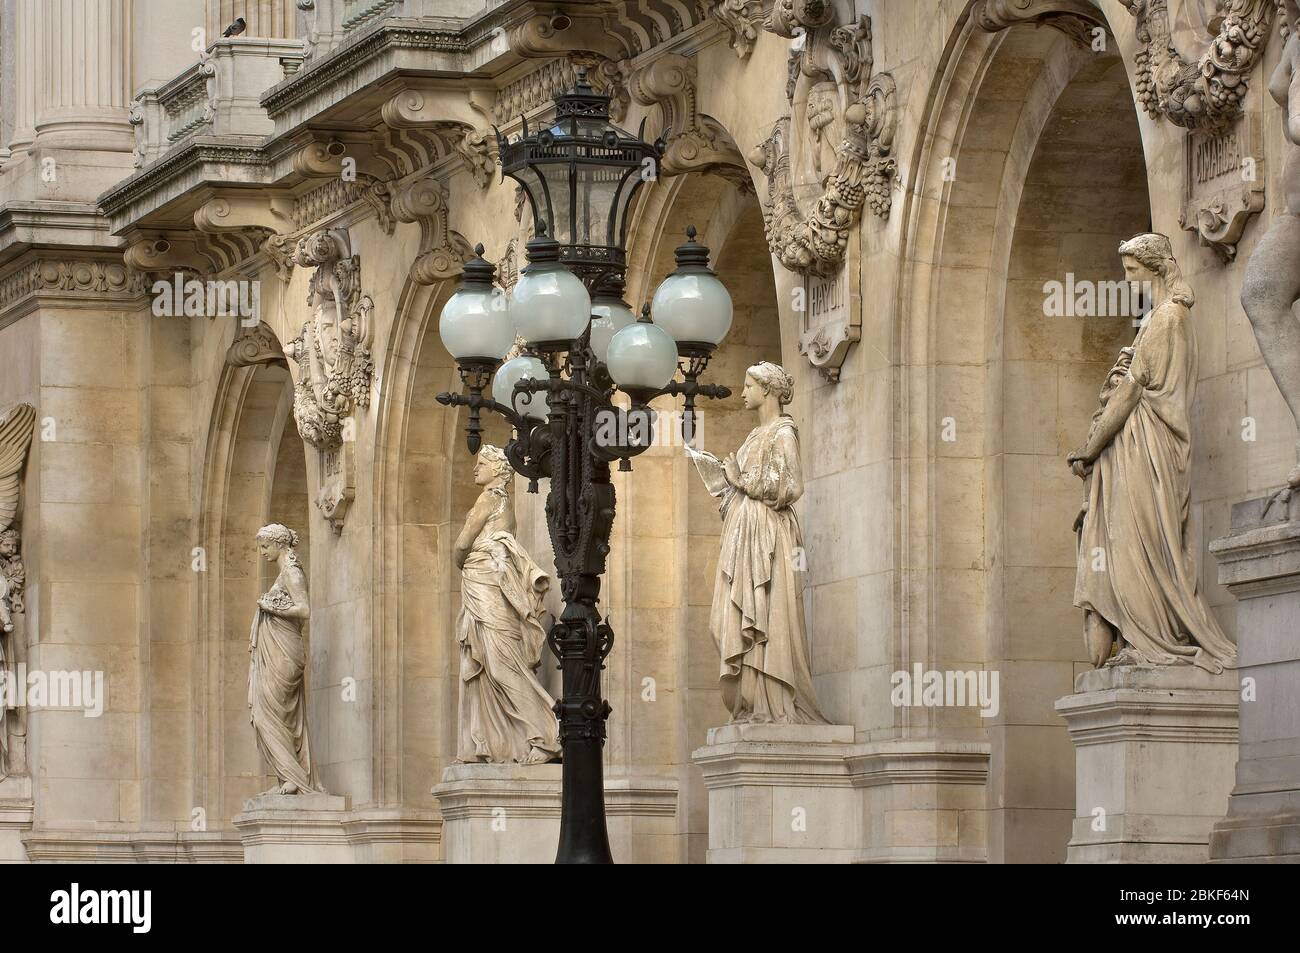 Lamp post and sculptures at the front of the Paris Opera,France, Ile-de-France, Paris. Place de l'Opéra. UNESCO World Heritage List, Charles Garnier, Stock Photo